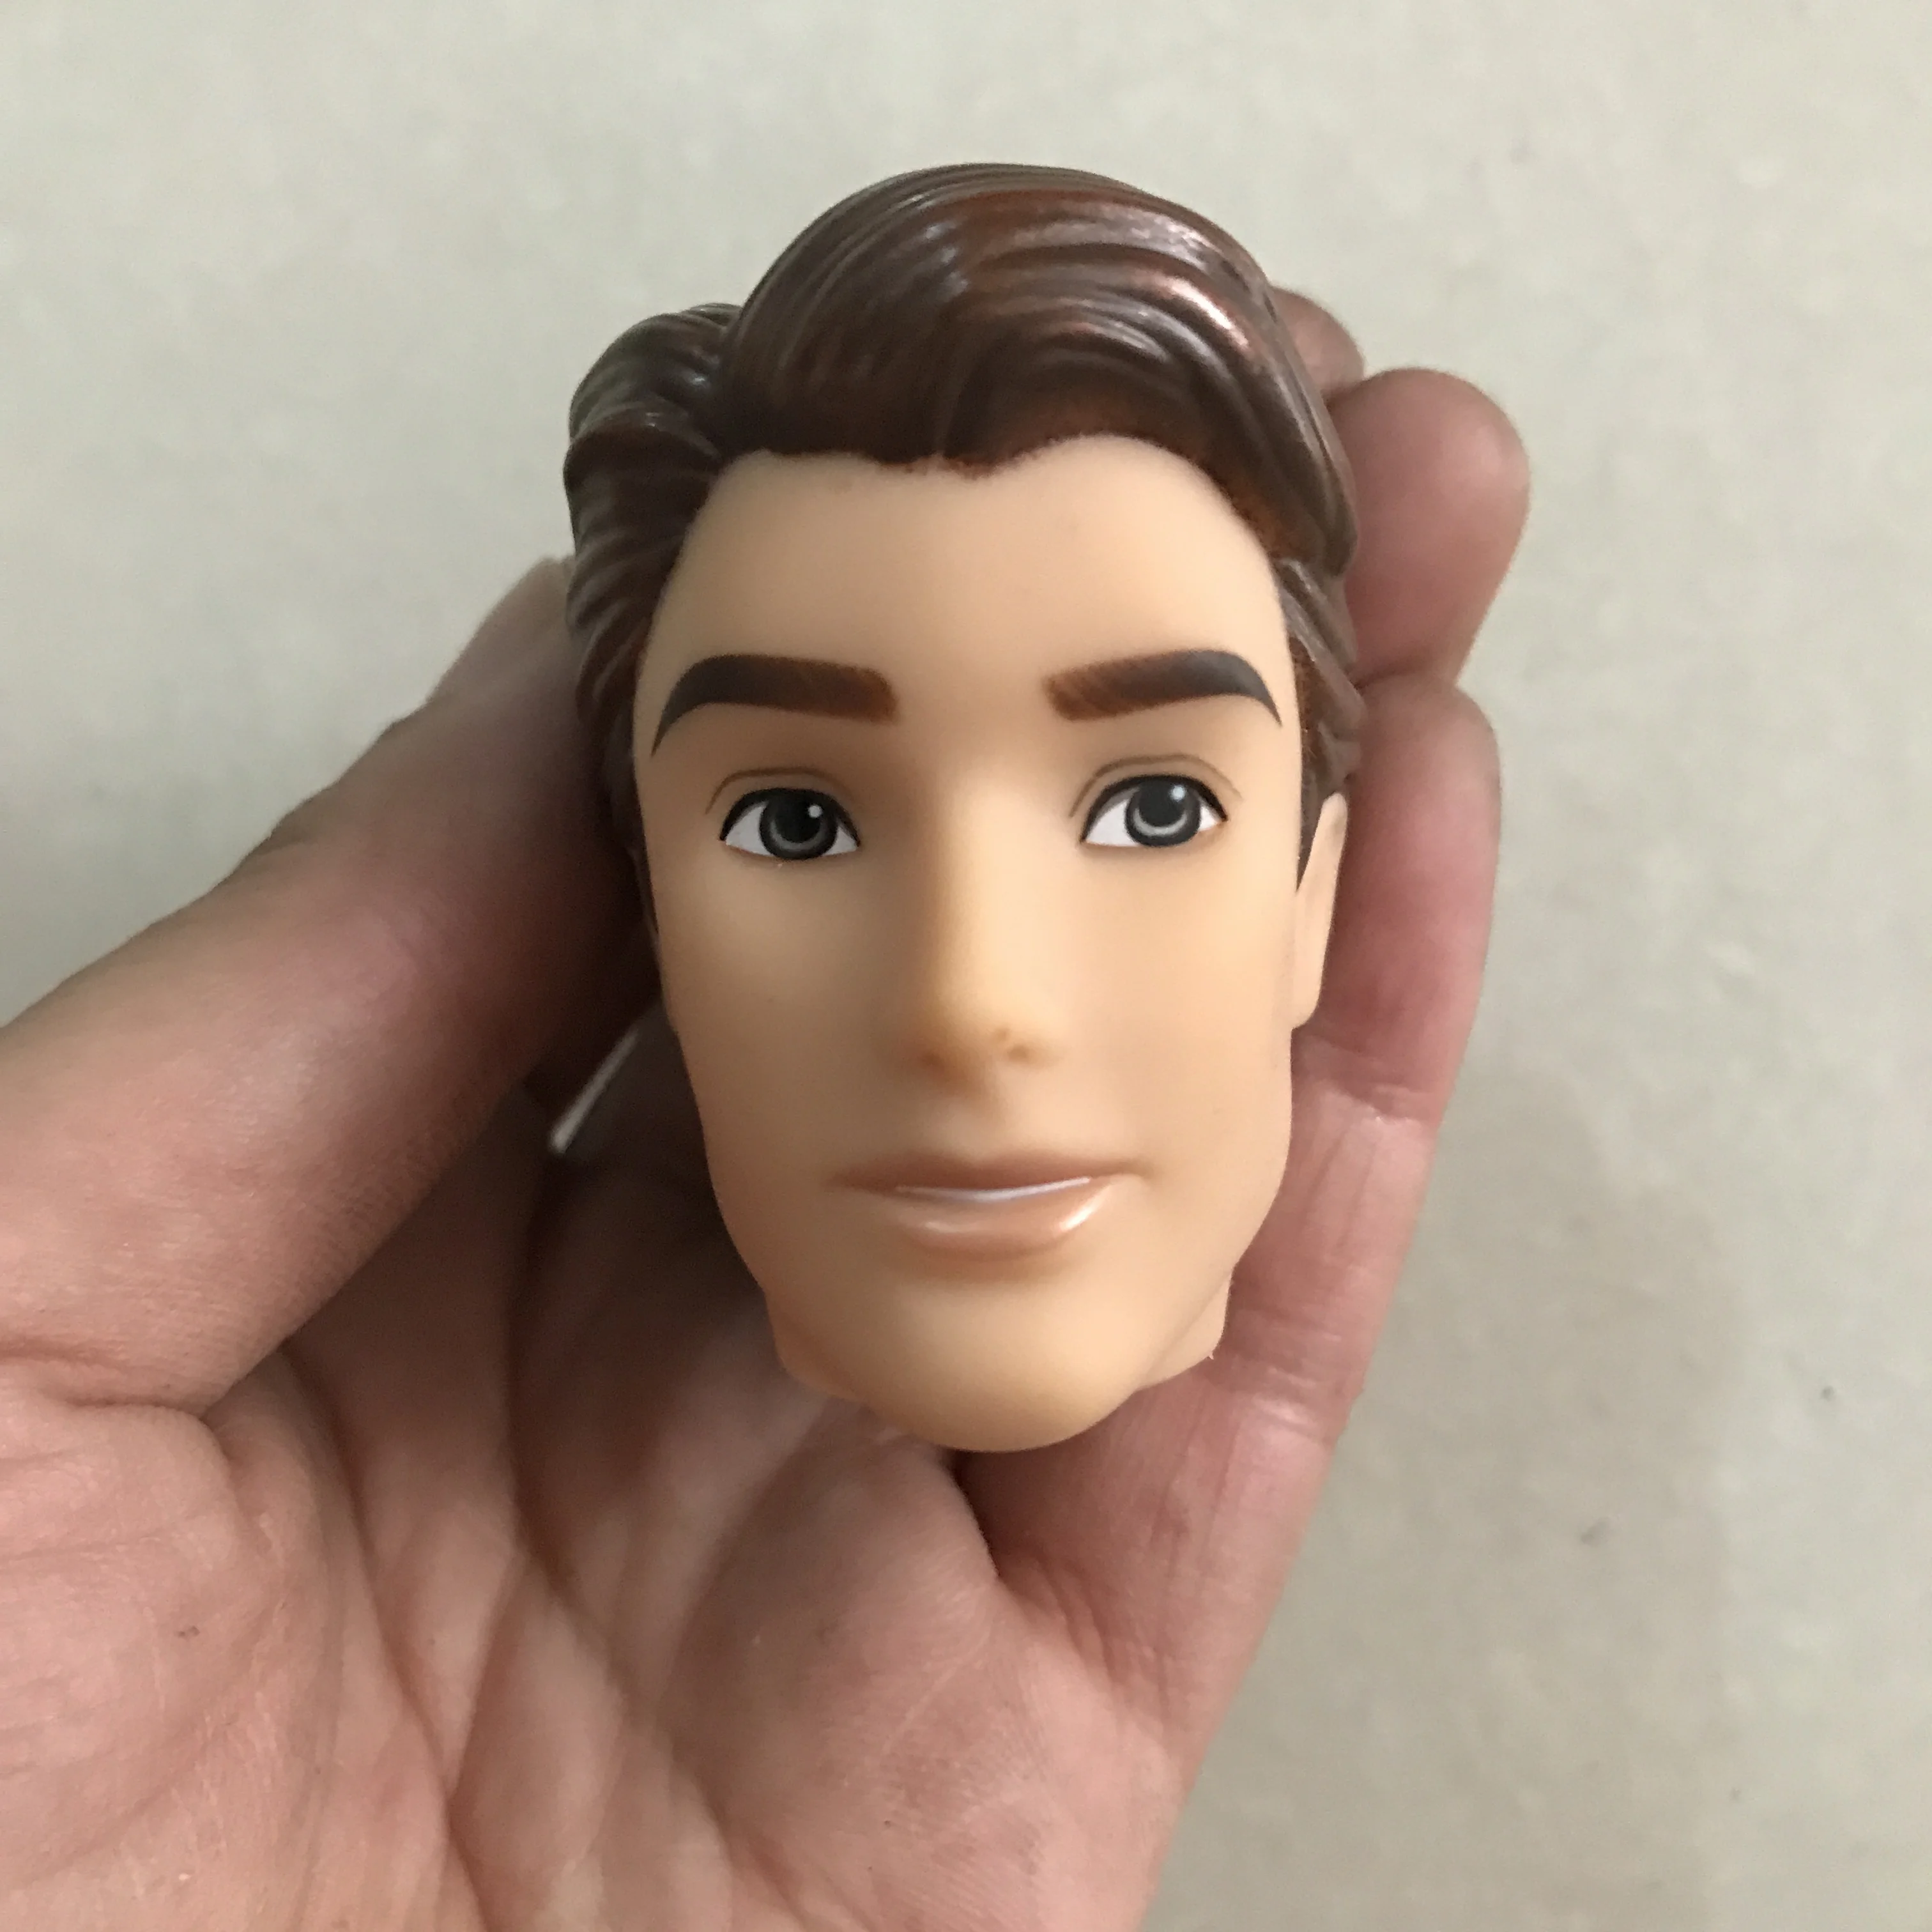 Кукла голова для Кен бойфренда 30 см мужской человек тела куклы-принцы DIY детские игрушки